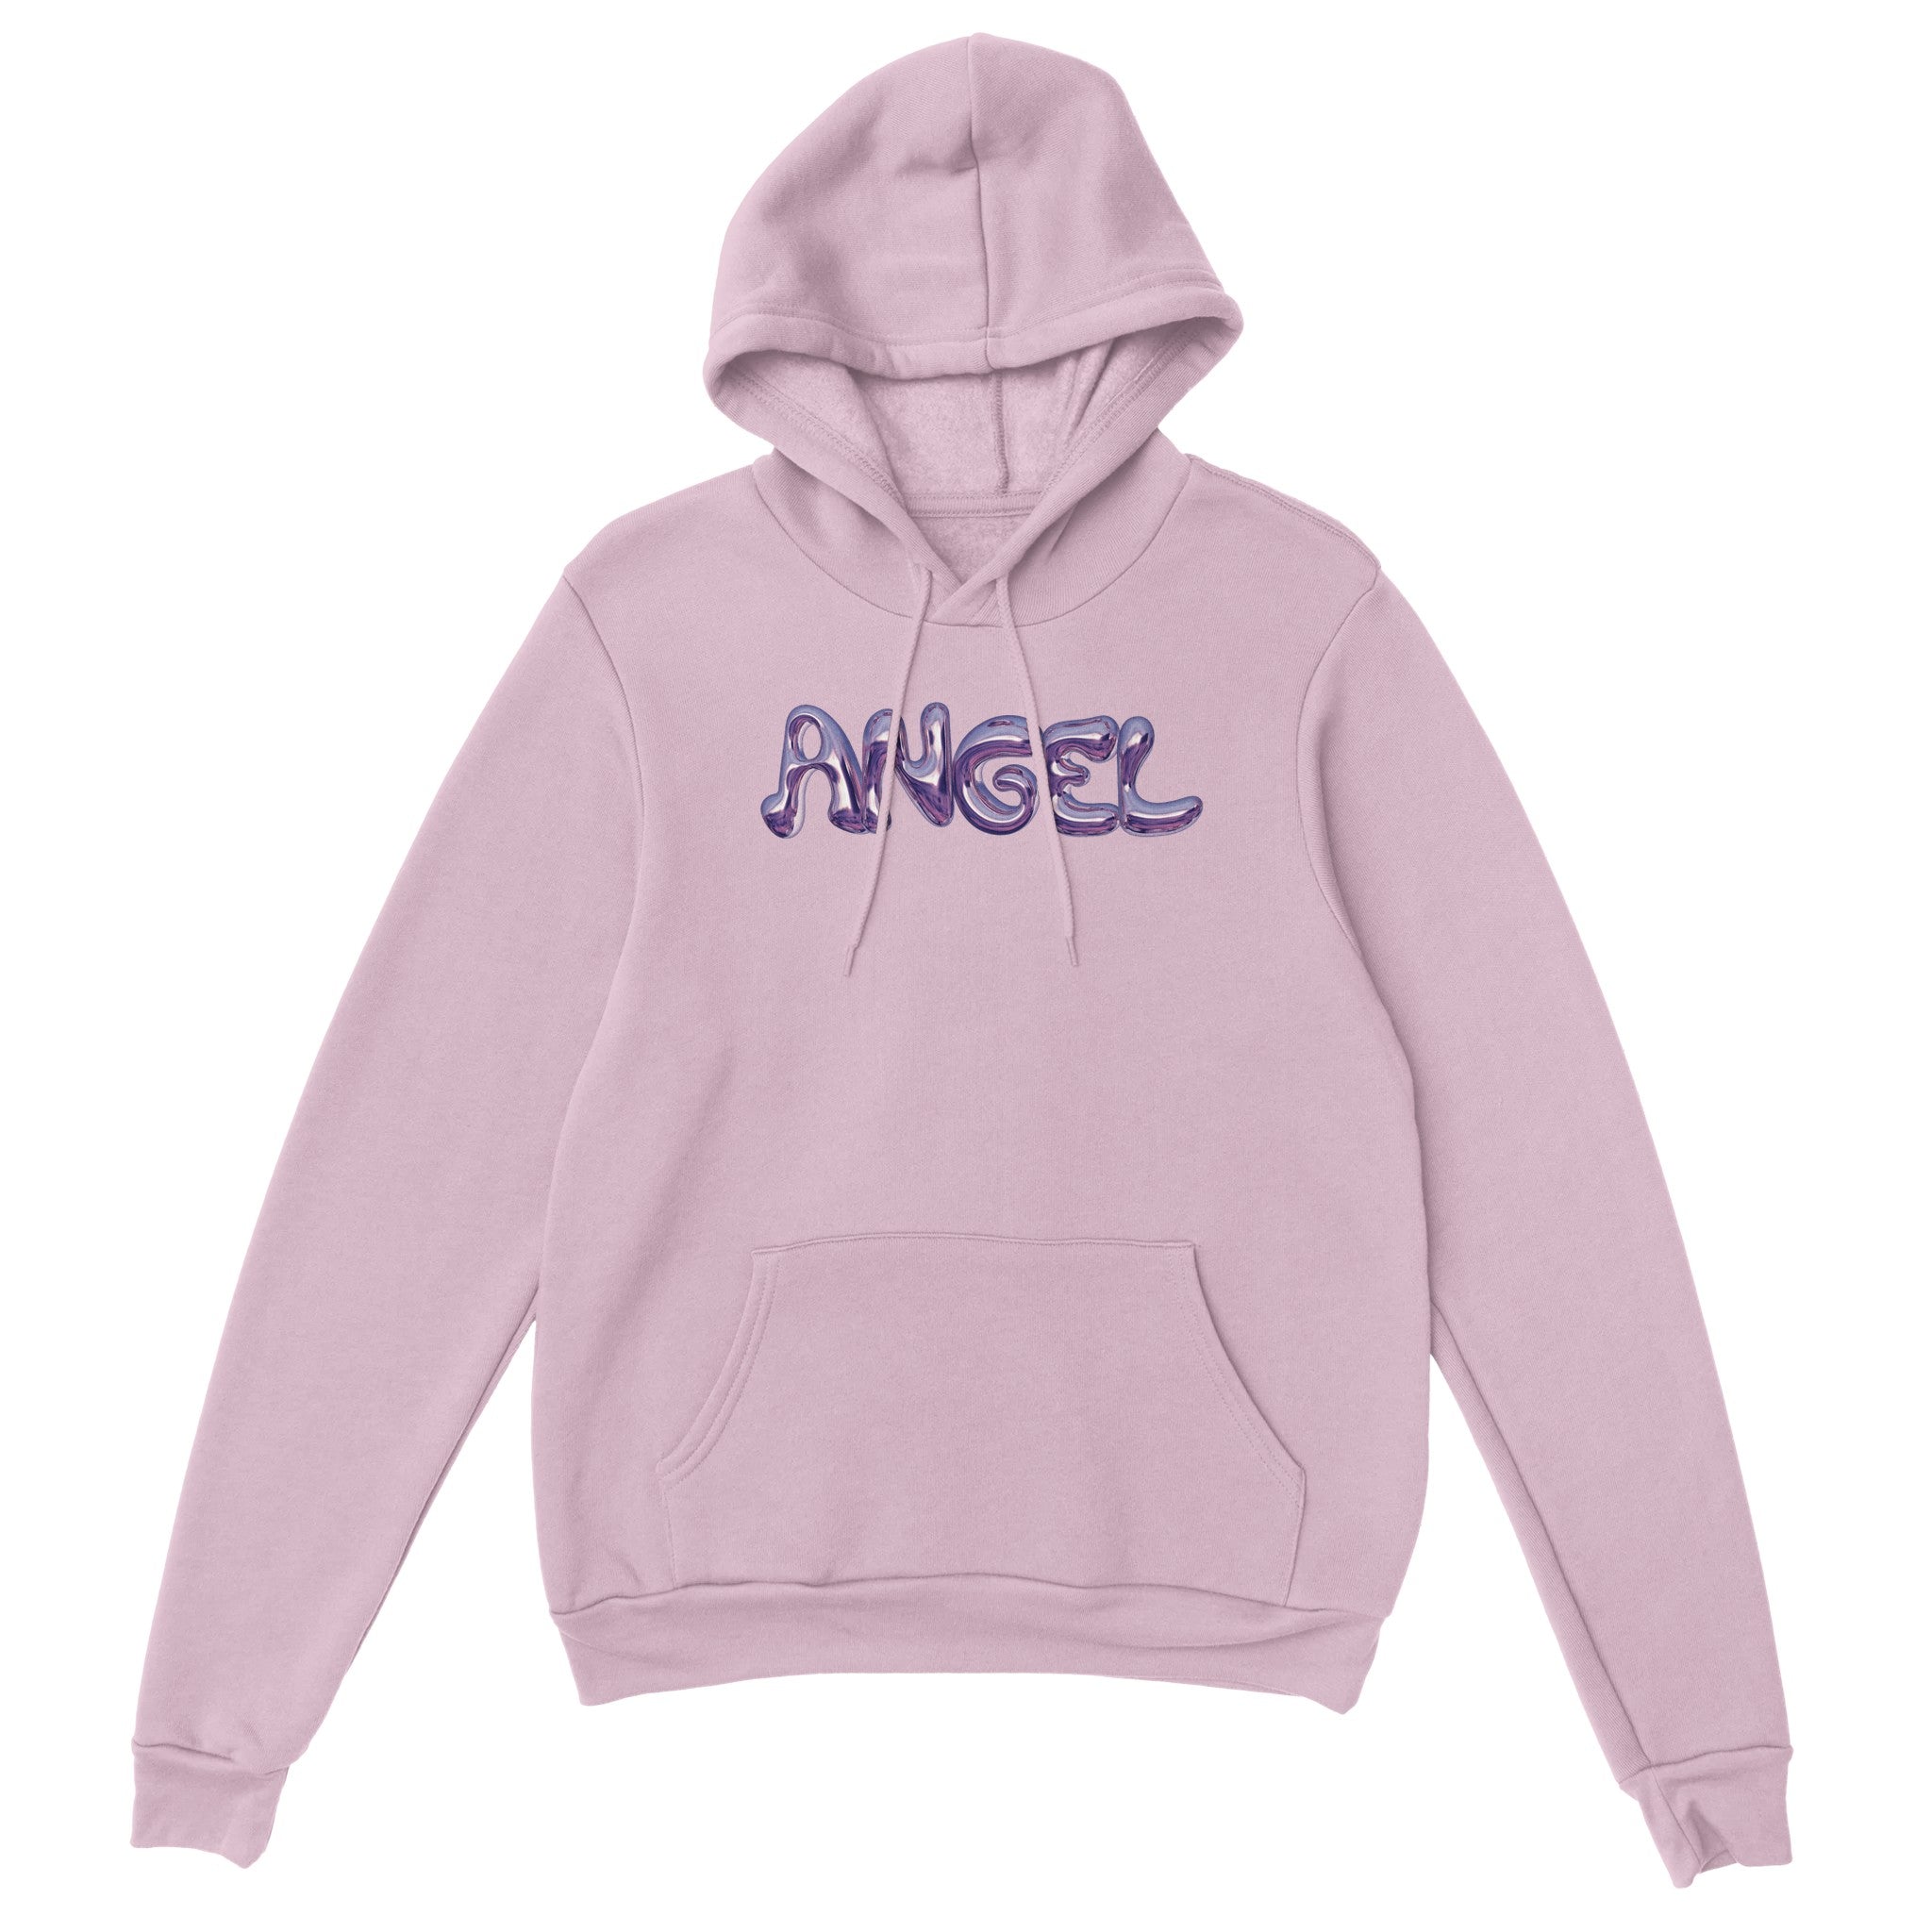 'Angel' hoodie - In Print We Trust